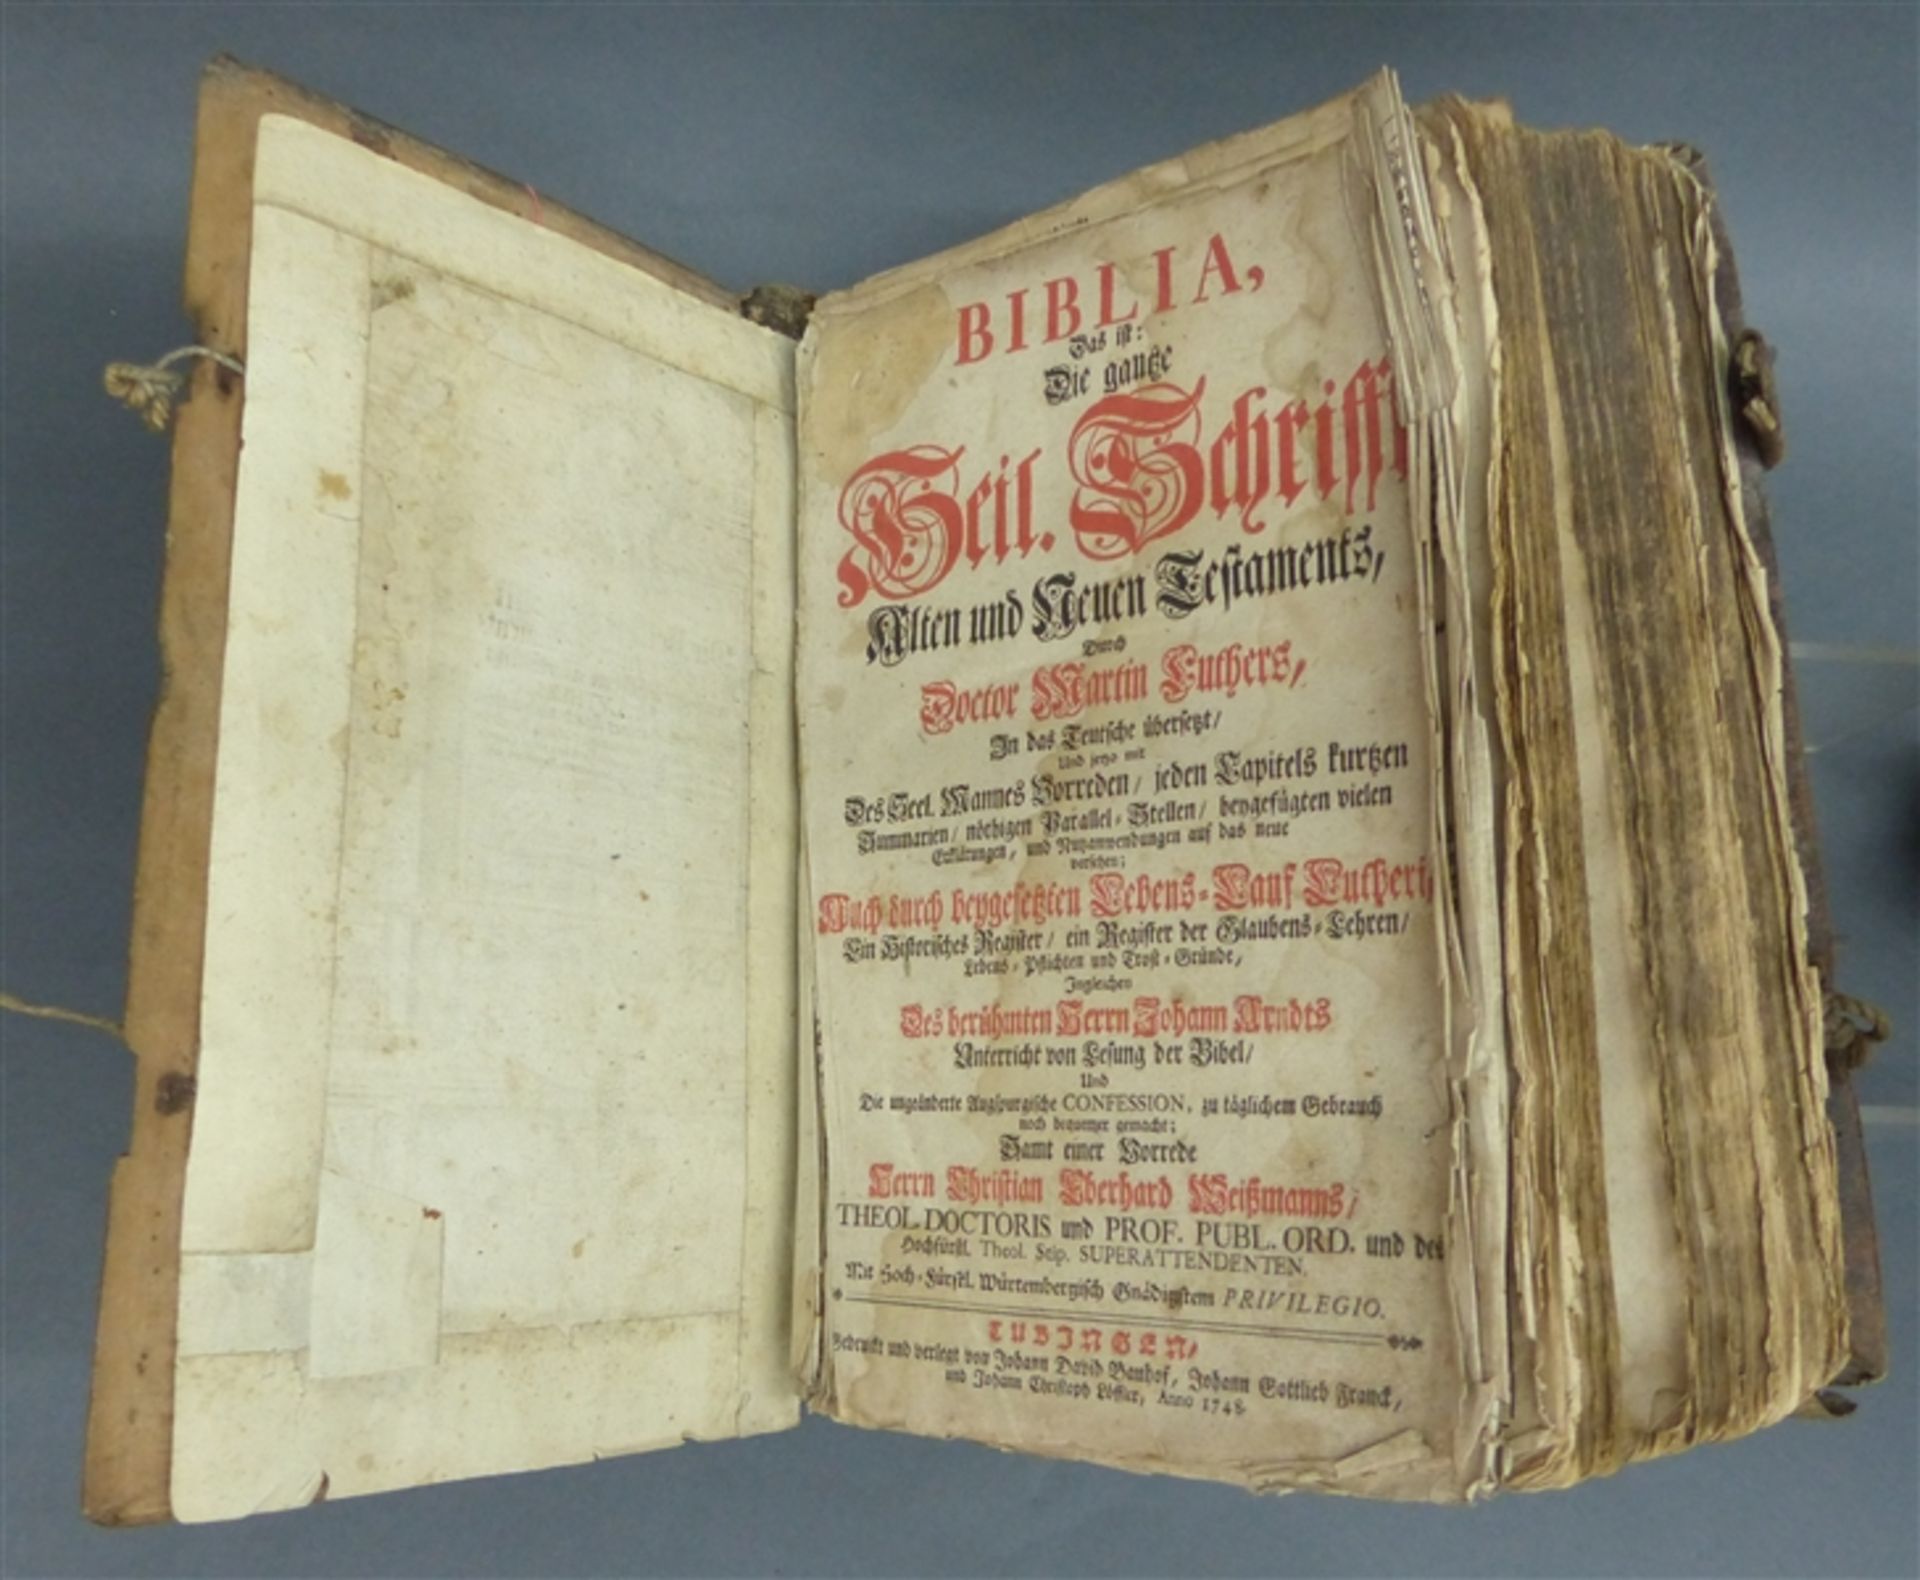 Bibel Die ganze Heil. Schrift, "Alten und Neuen Testaments", Martin Luthers, Titelkupfer, schlechter